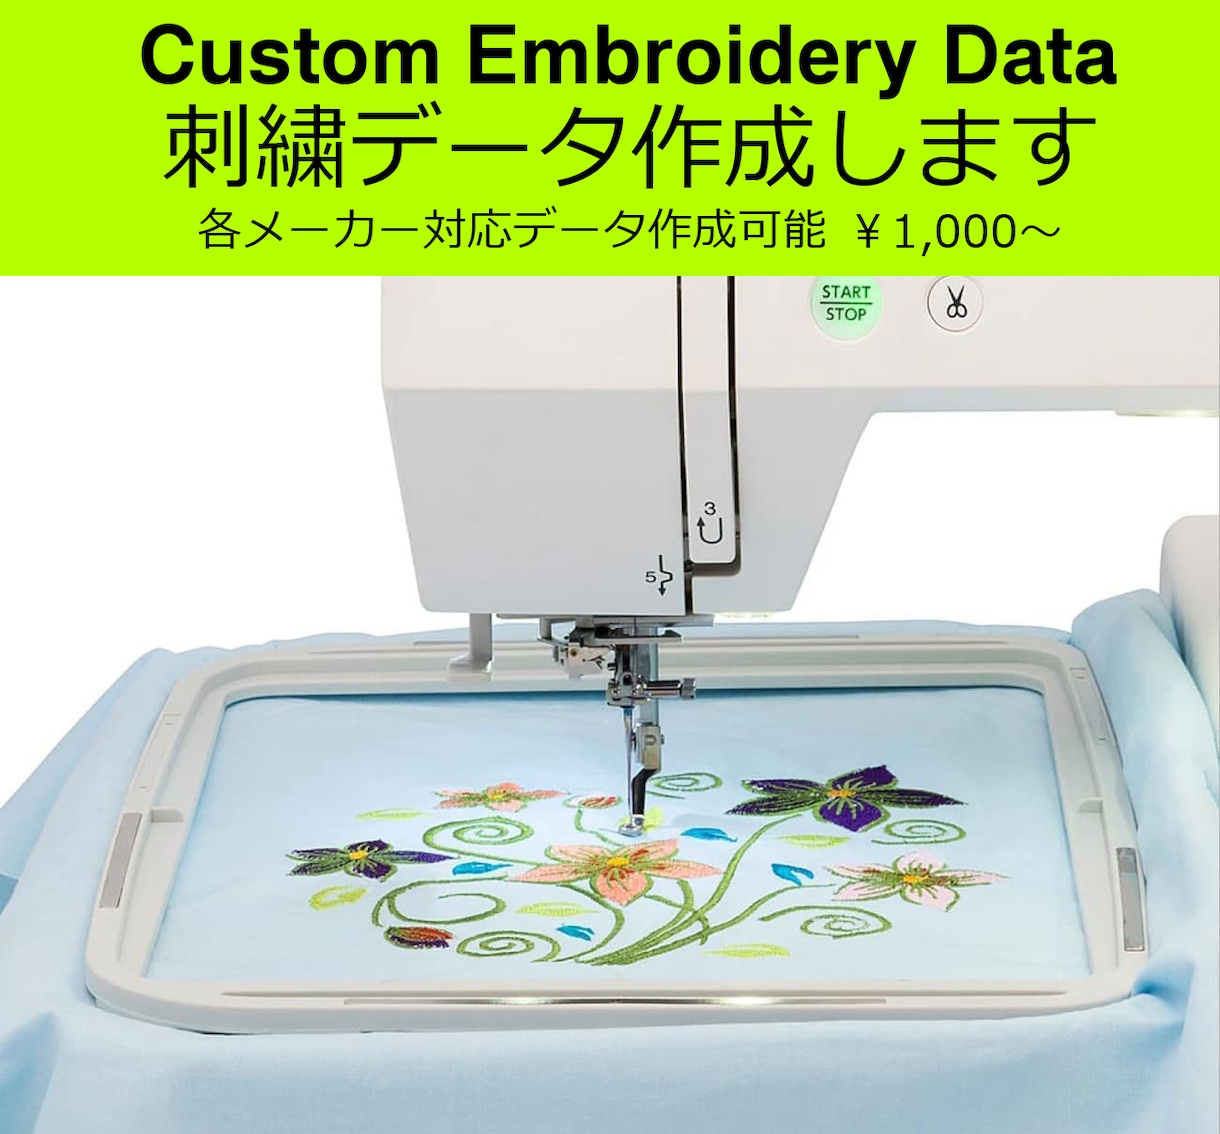 各種メーカーに対応する刺繍ミシン用データを作ります ブラザー・ジャノメ・シンガー等オリジナル刺繍データの作成 | オリジナルグッズ販売 | ココナラ